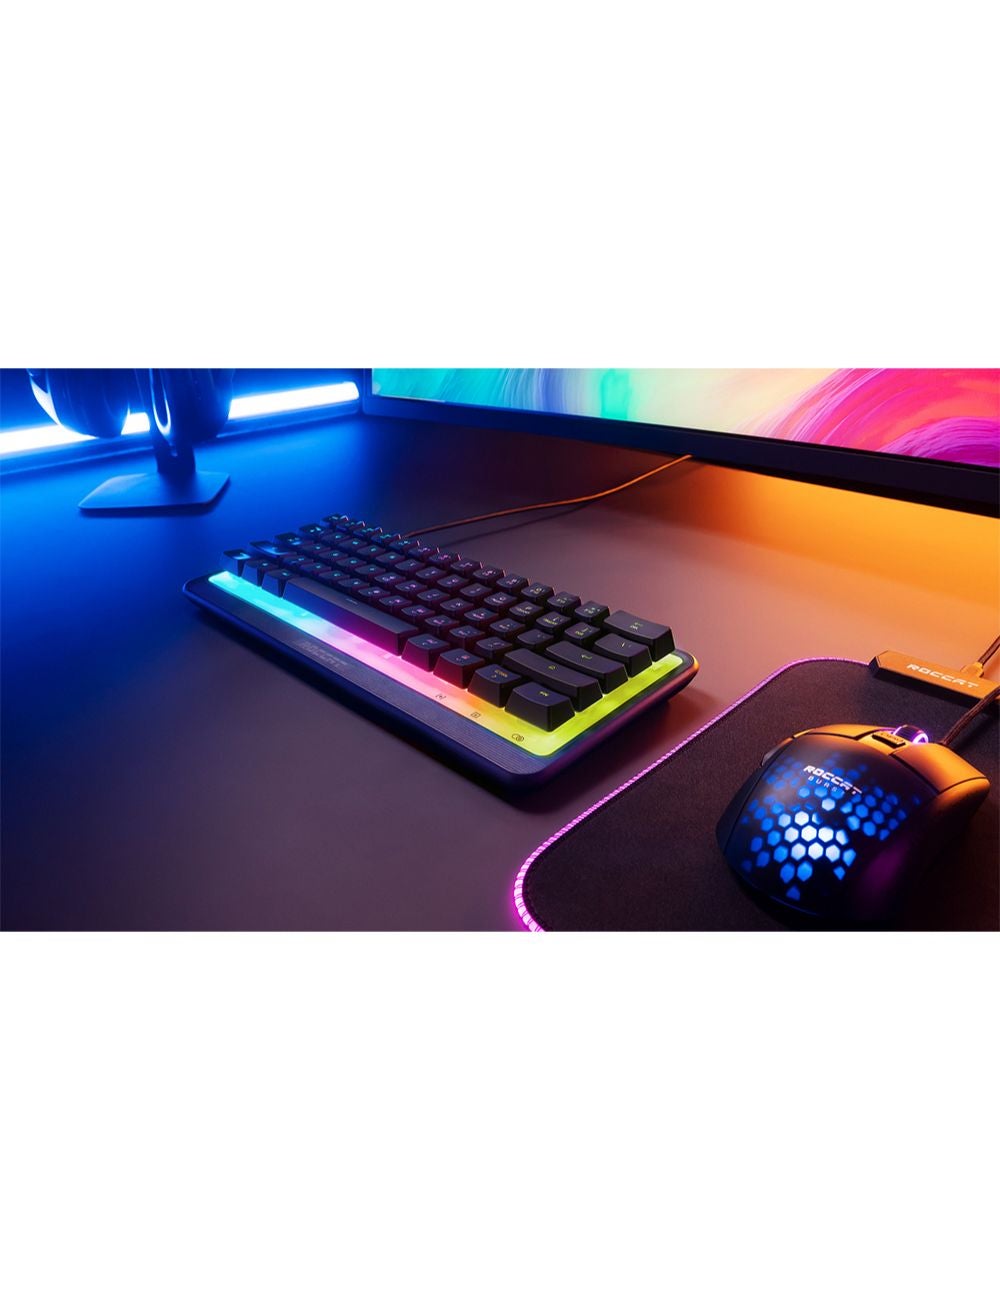 Magma Mini 60% RGB Gaming Keyboard